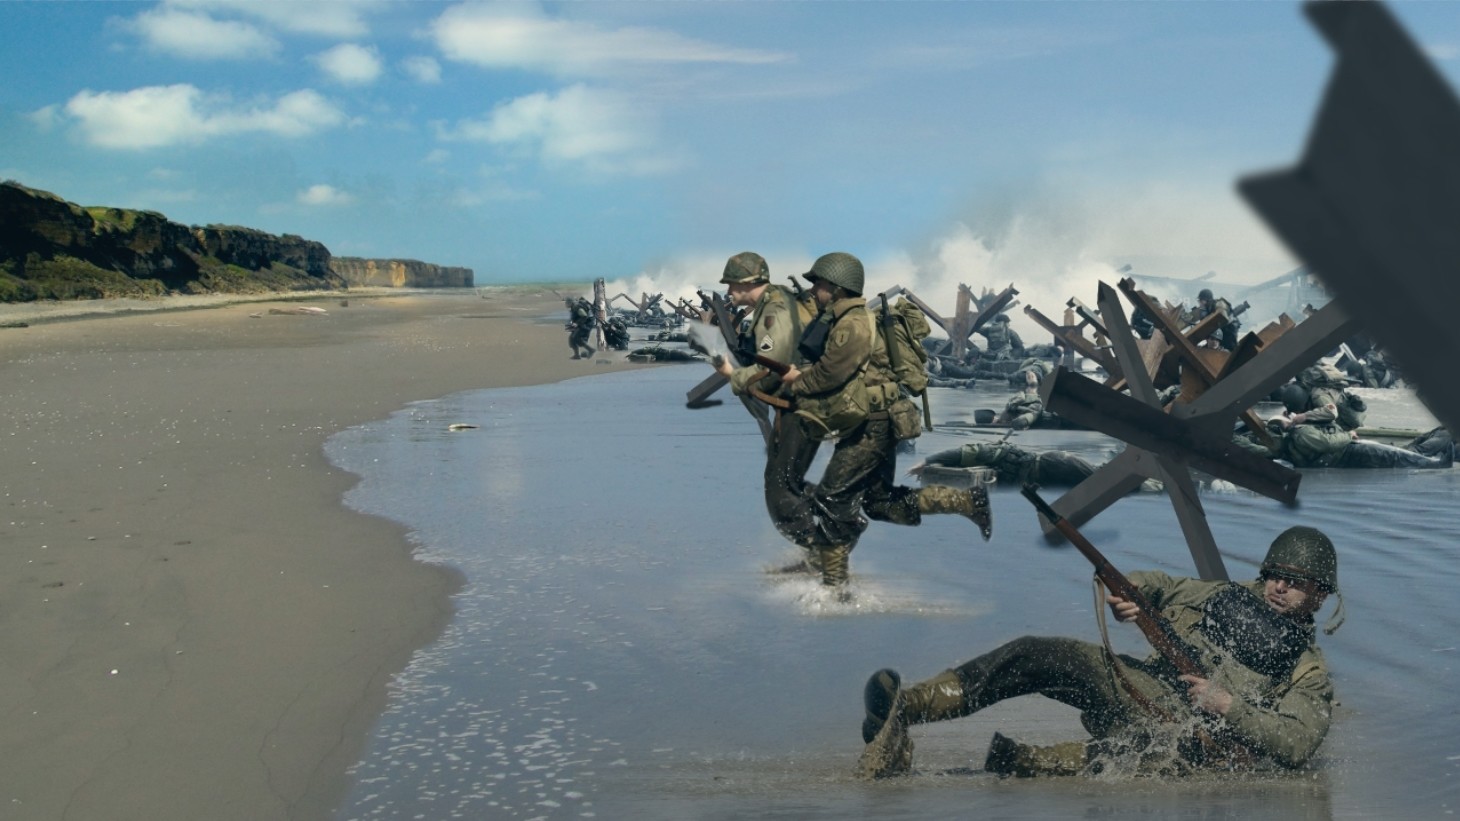 Высадка в нормандии игра. Омаха Бич высадка в Нормандии. Омаха пляж 1944 высадка в Нормандии. Нормандия пляж Омаха. Ww2 высадка в Нормандии.